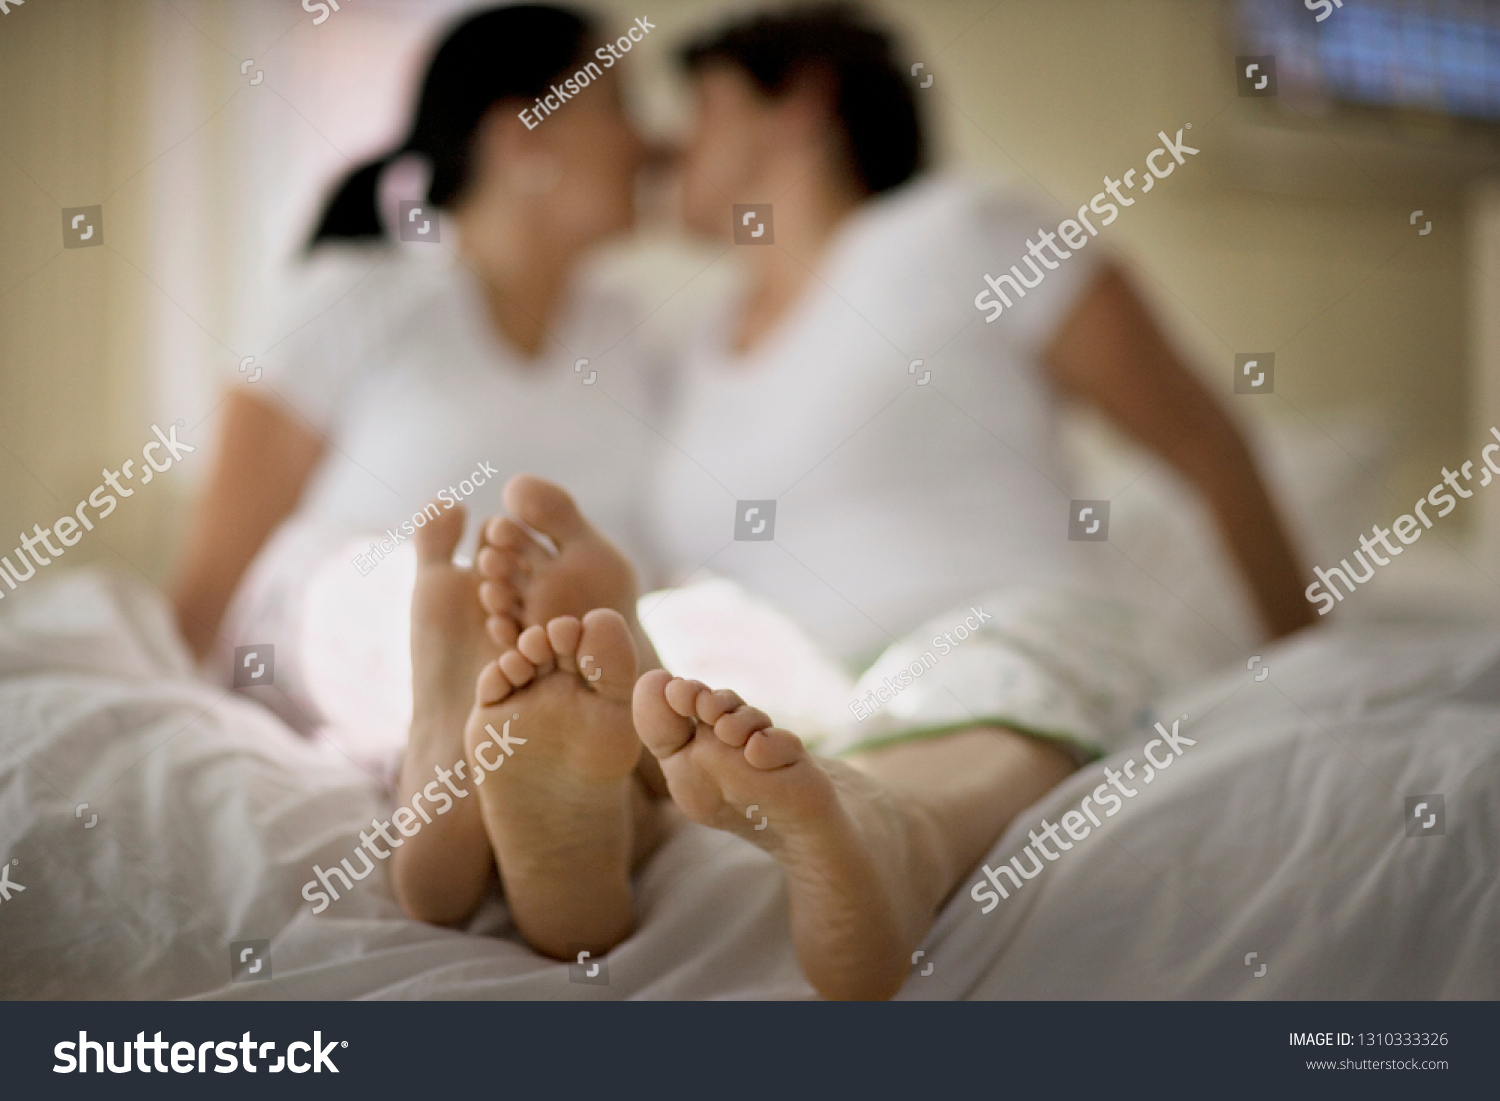 Lesbian Mature Feet